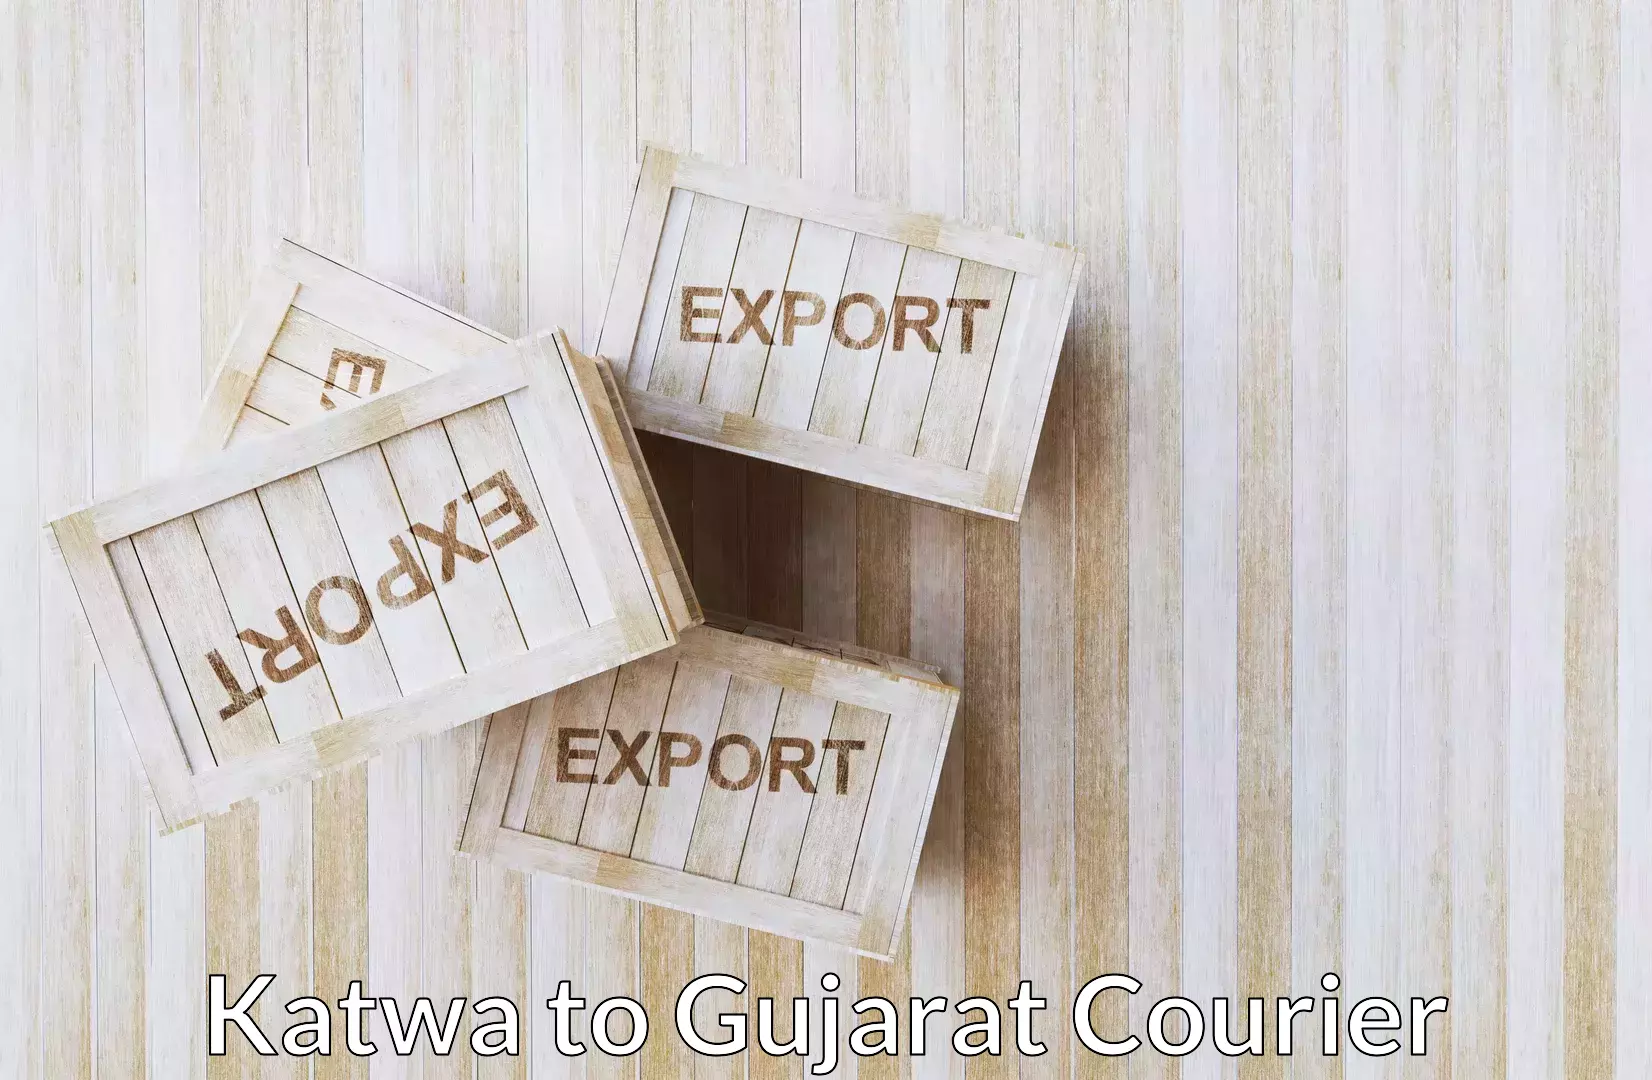 Professional baggage transport Katwa to Gujarat